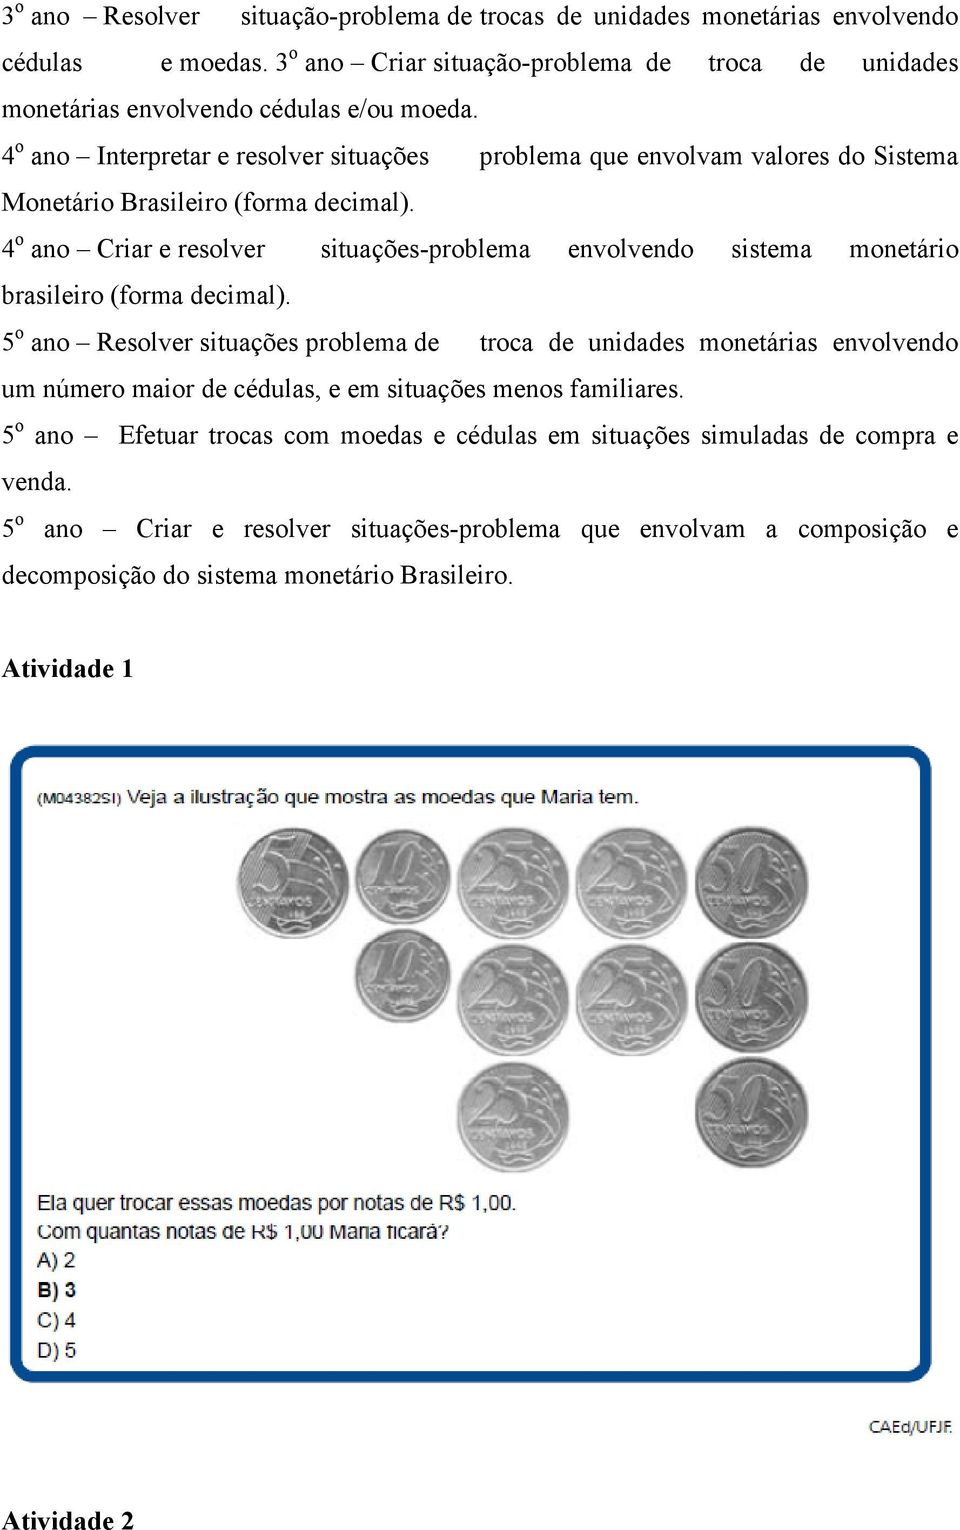 4 o ano Criar e resolver situações-problema envolvendo sistema monetário brasileiro (forma decimal).